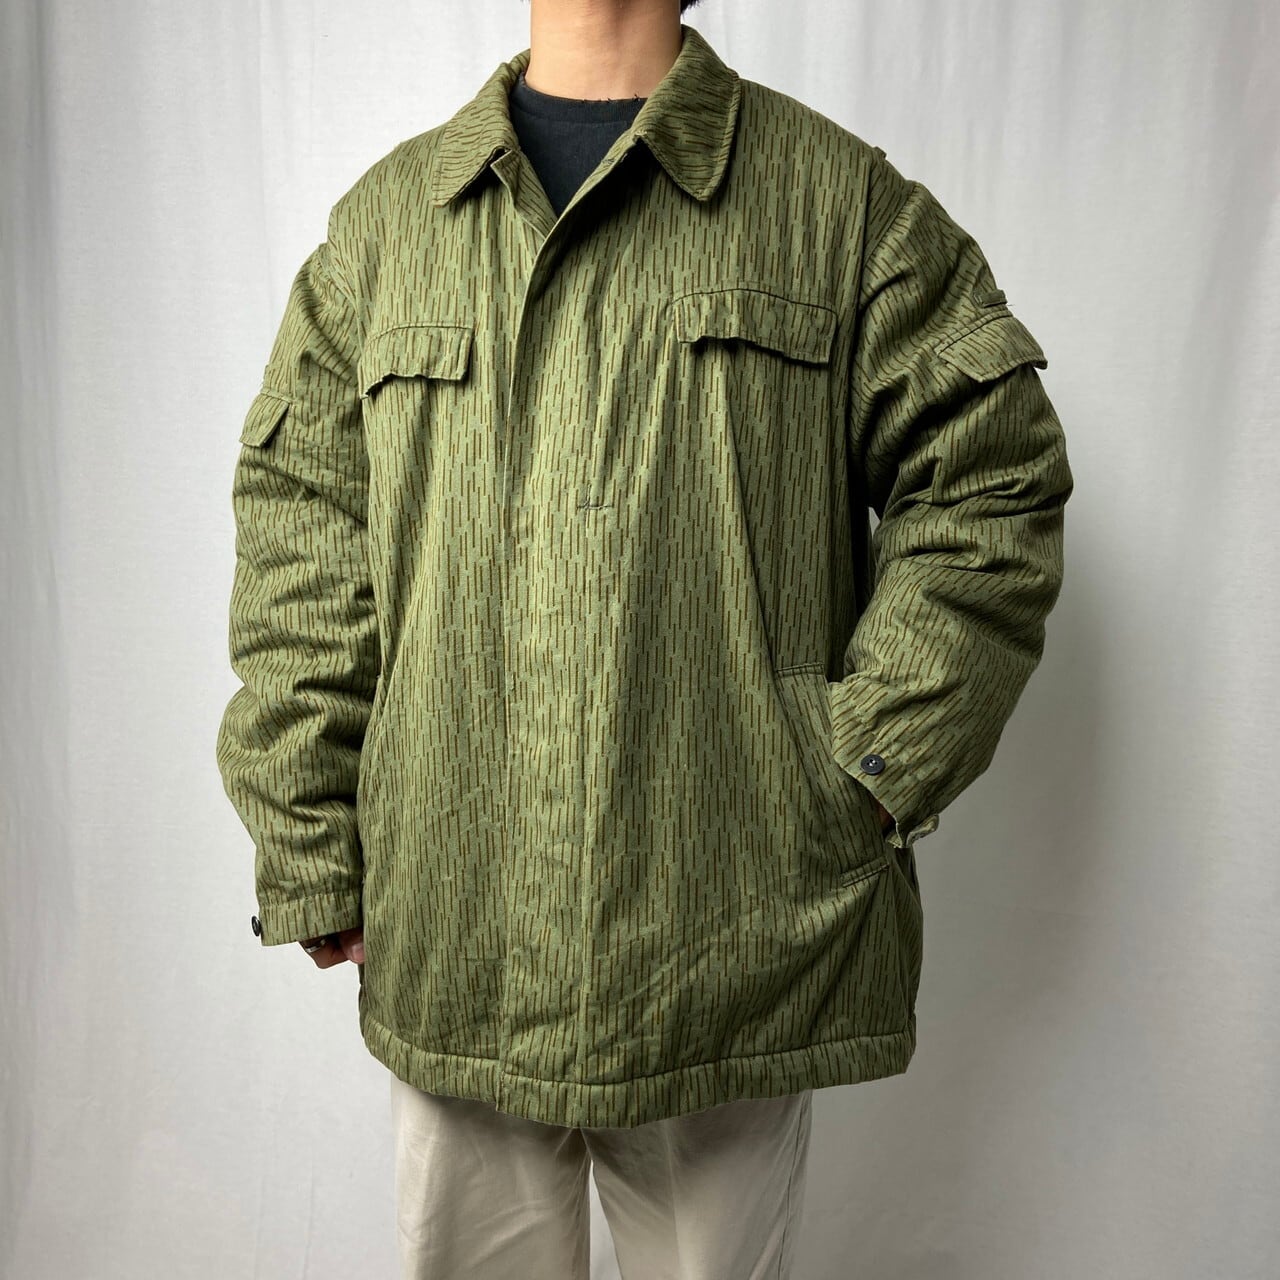 旧東ドイツ軍  レインドロップカモ  フィールドジャケット  ミリタリー  草色